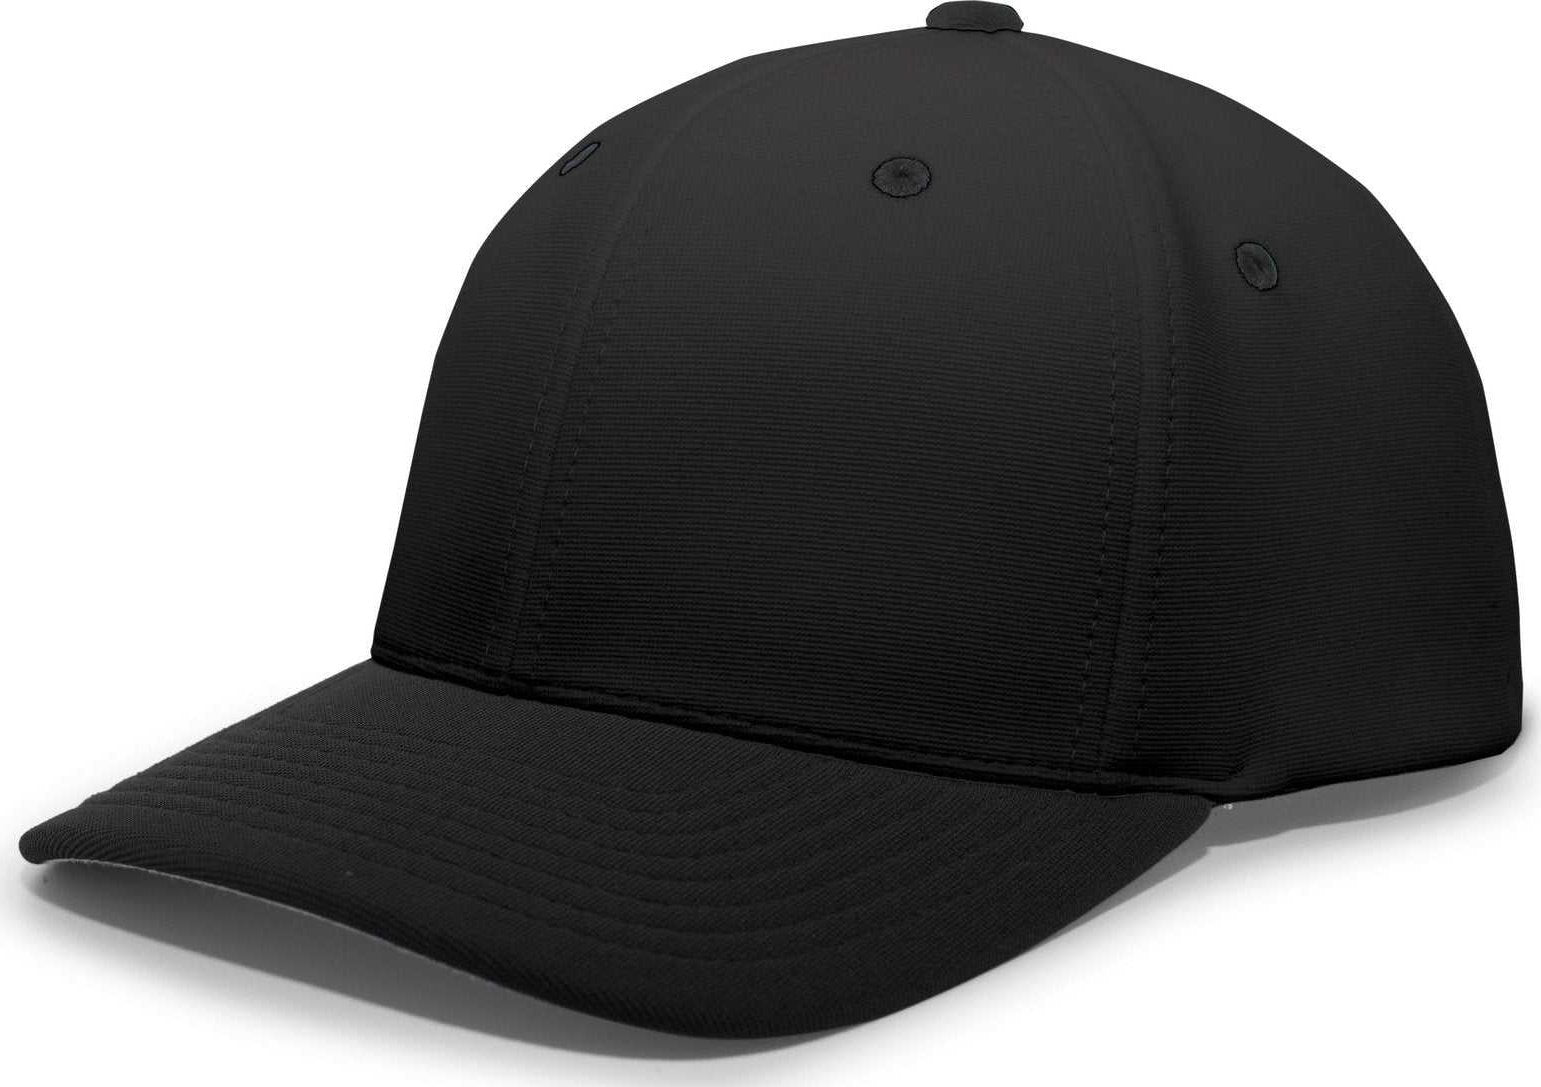 Pacific Headwear 498F M2 Performance Flexfit Cap - Black - HIT a Double